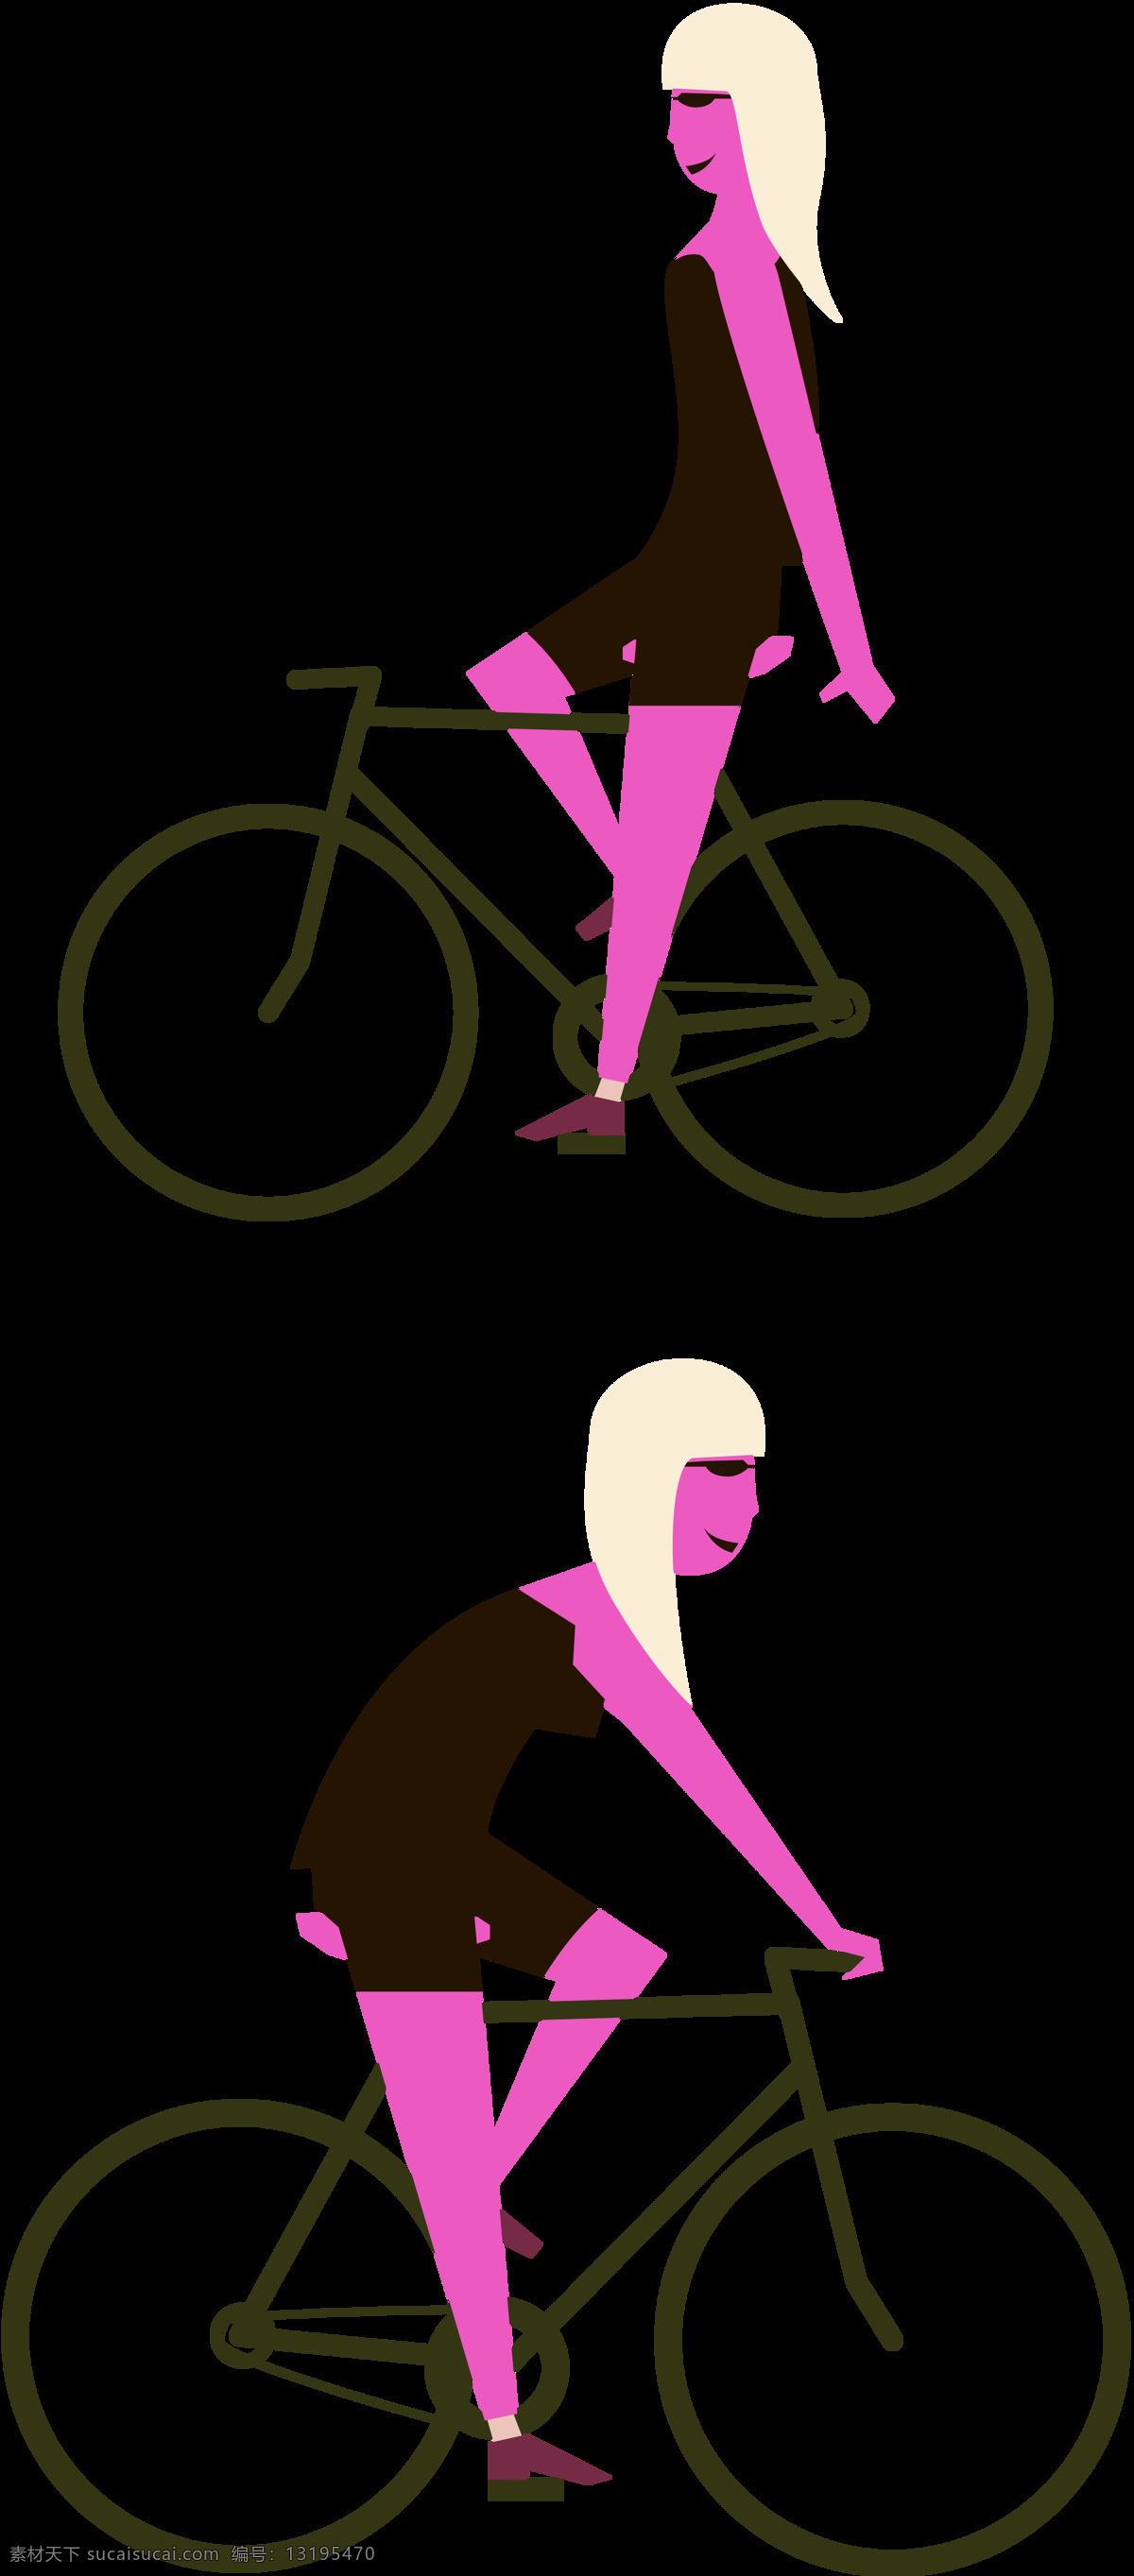 时尚 单车 自行车 插画 免 抠 透明 图 层 共享单车 女式单车 男式单车 电动车 绿色低碳 绿色环保 环保电动车 健身单车 摩拜 ofo单车 小蓝单车 双人单车 多人单车